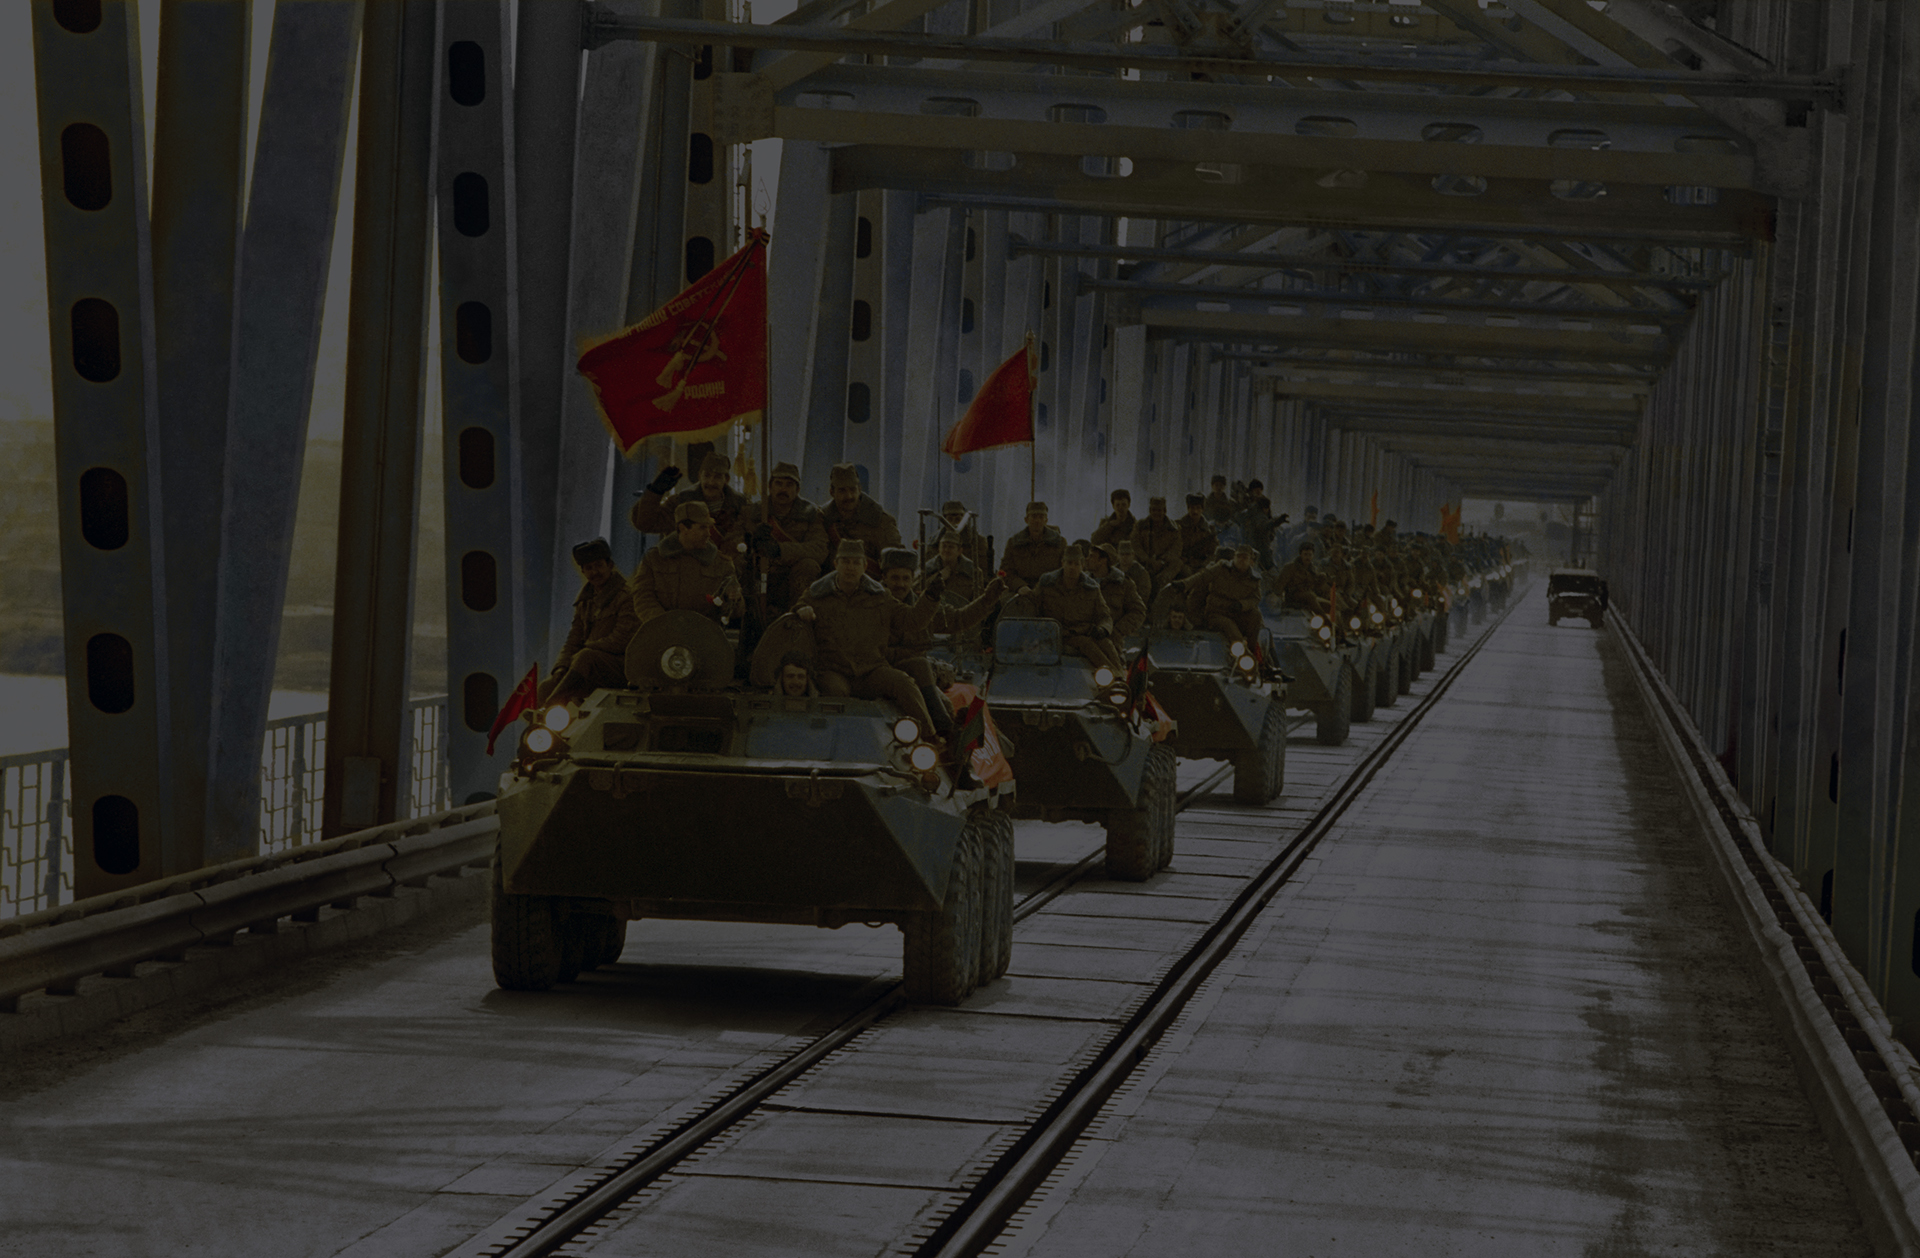 Вывод советских войск из афганистана фото